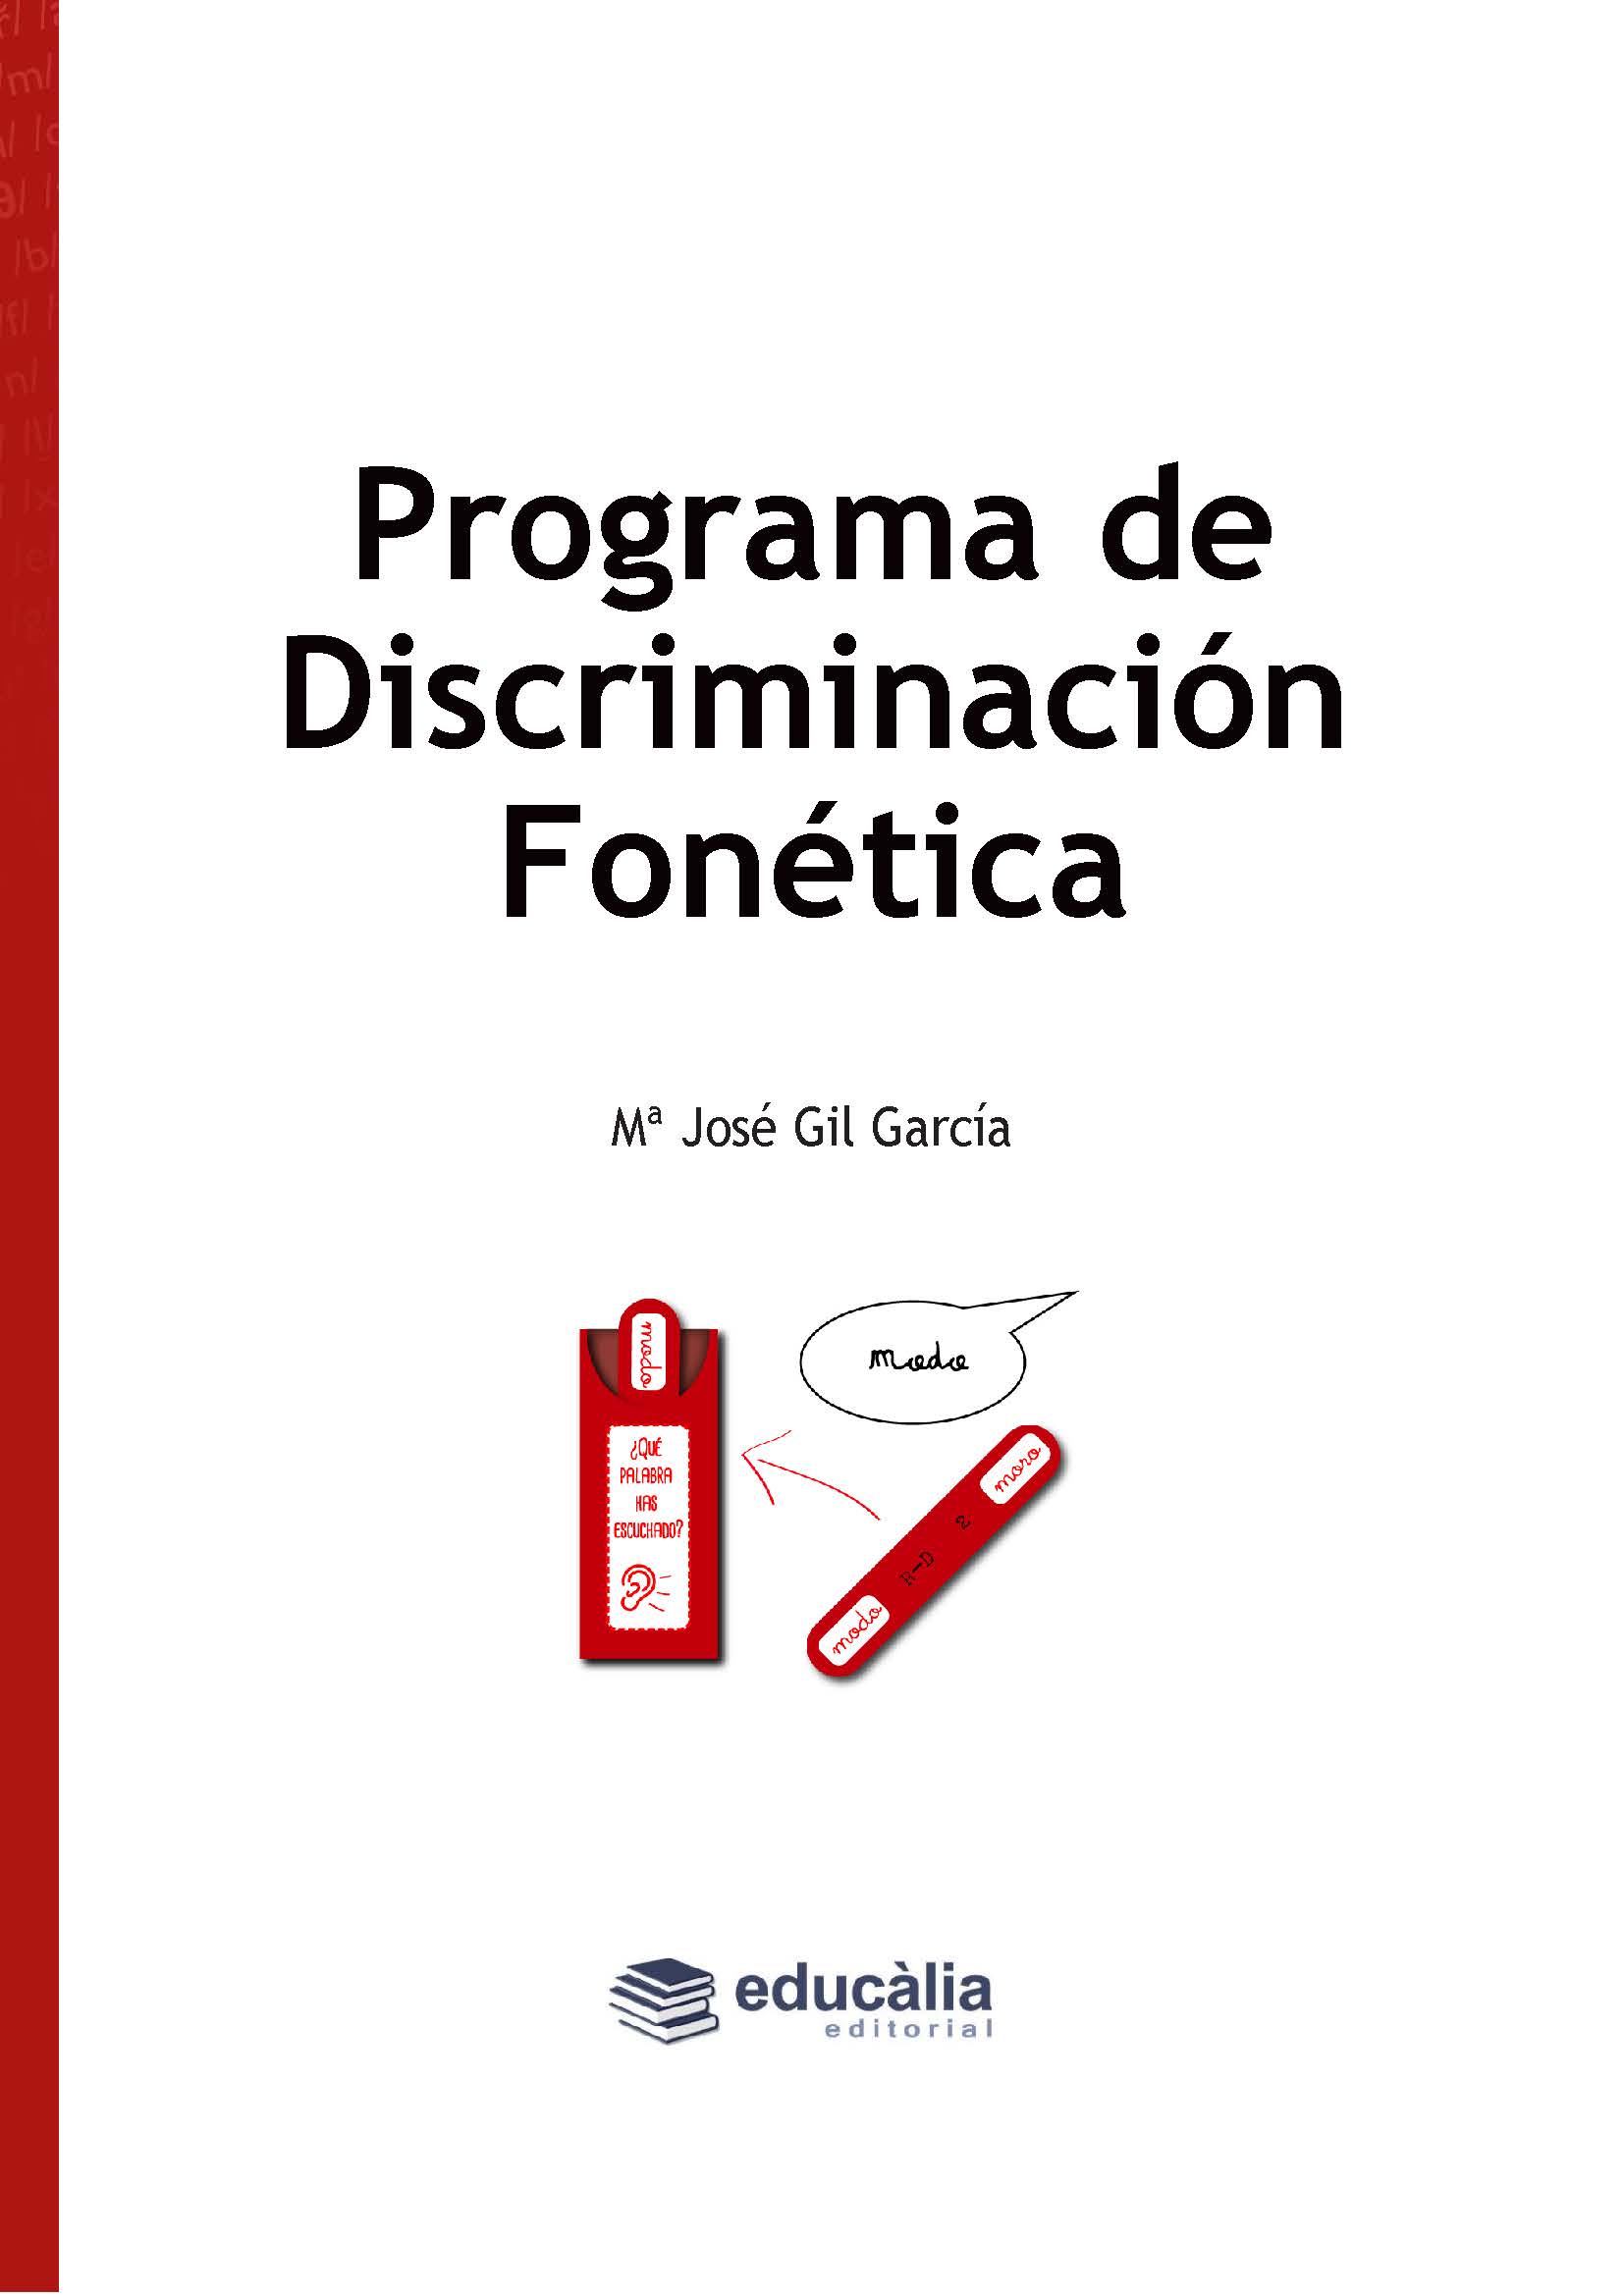 Programa de discriminación fonética